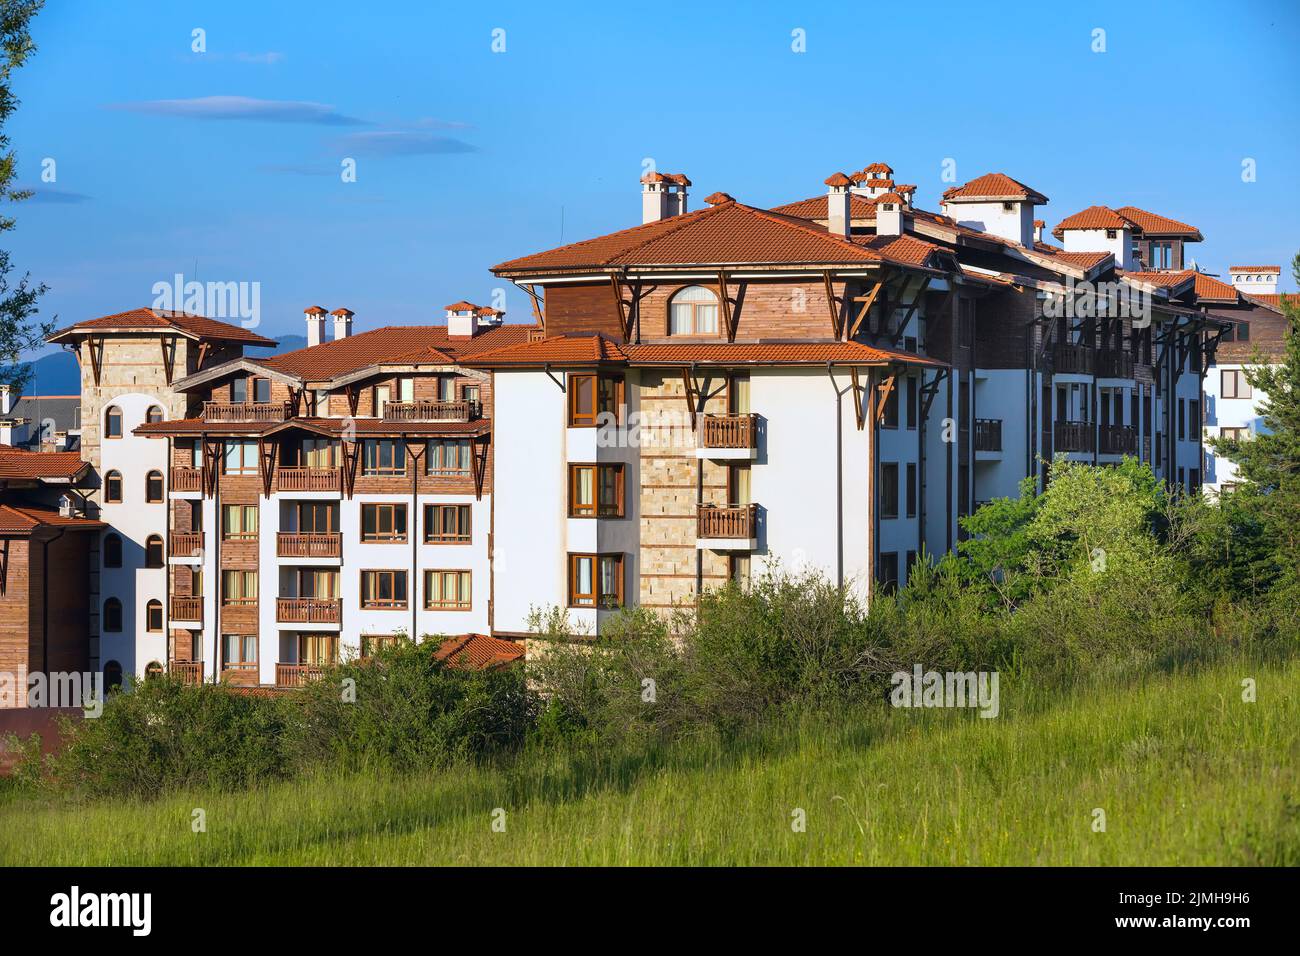 Chalet en bois maisons d'hôtel et montagnes d'été panorama dans la station de ski bulgare Bansko, Bulgarie Banque D'Images